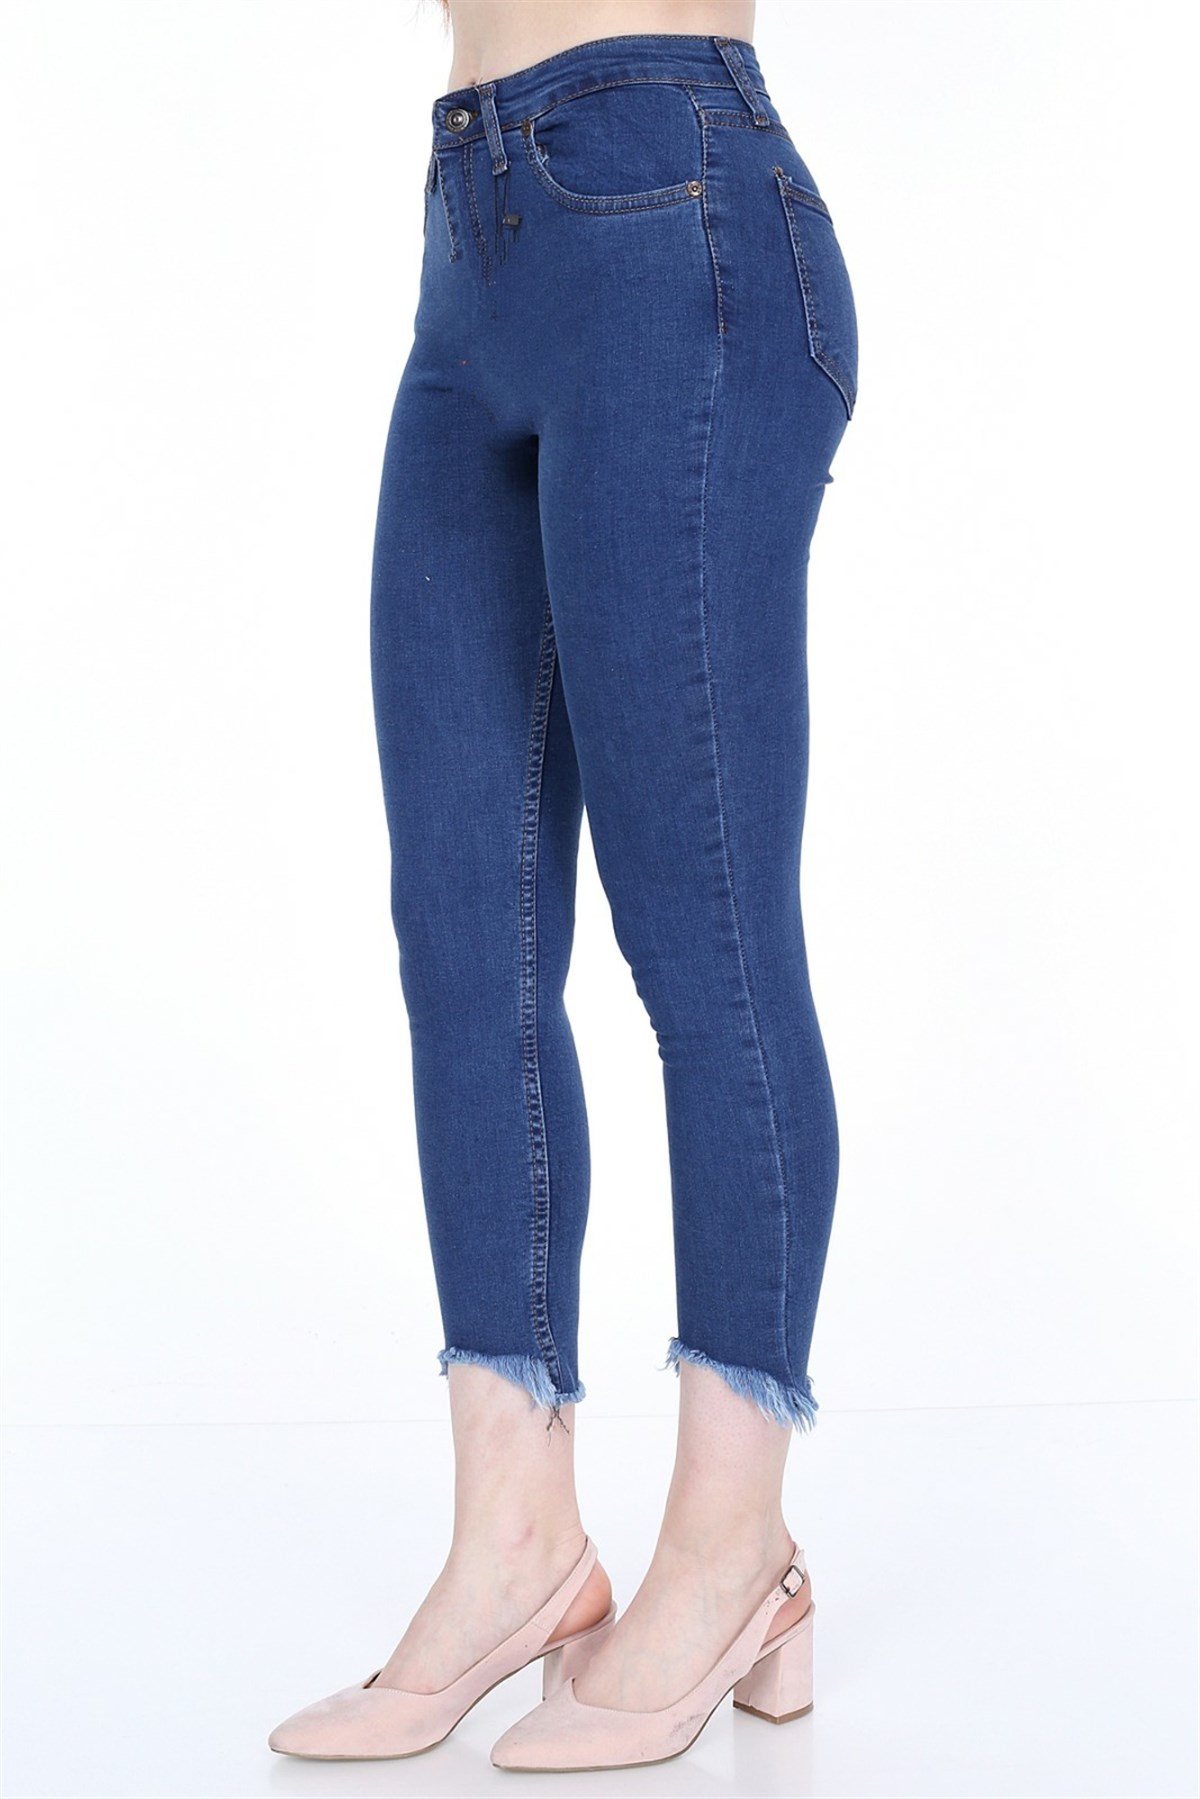 Mavi Likralı ve Yüksek Bel Bayan Kot Pantolon - YDD 0023